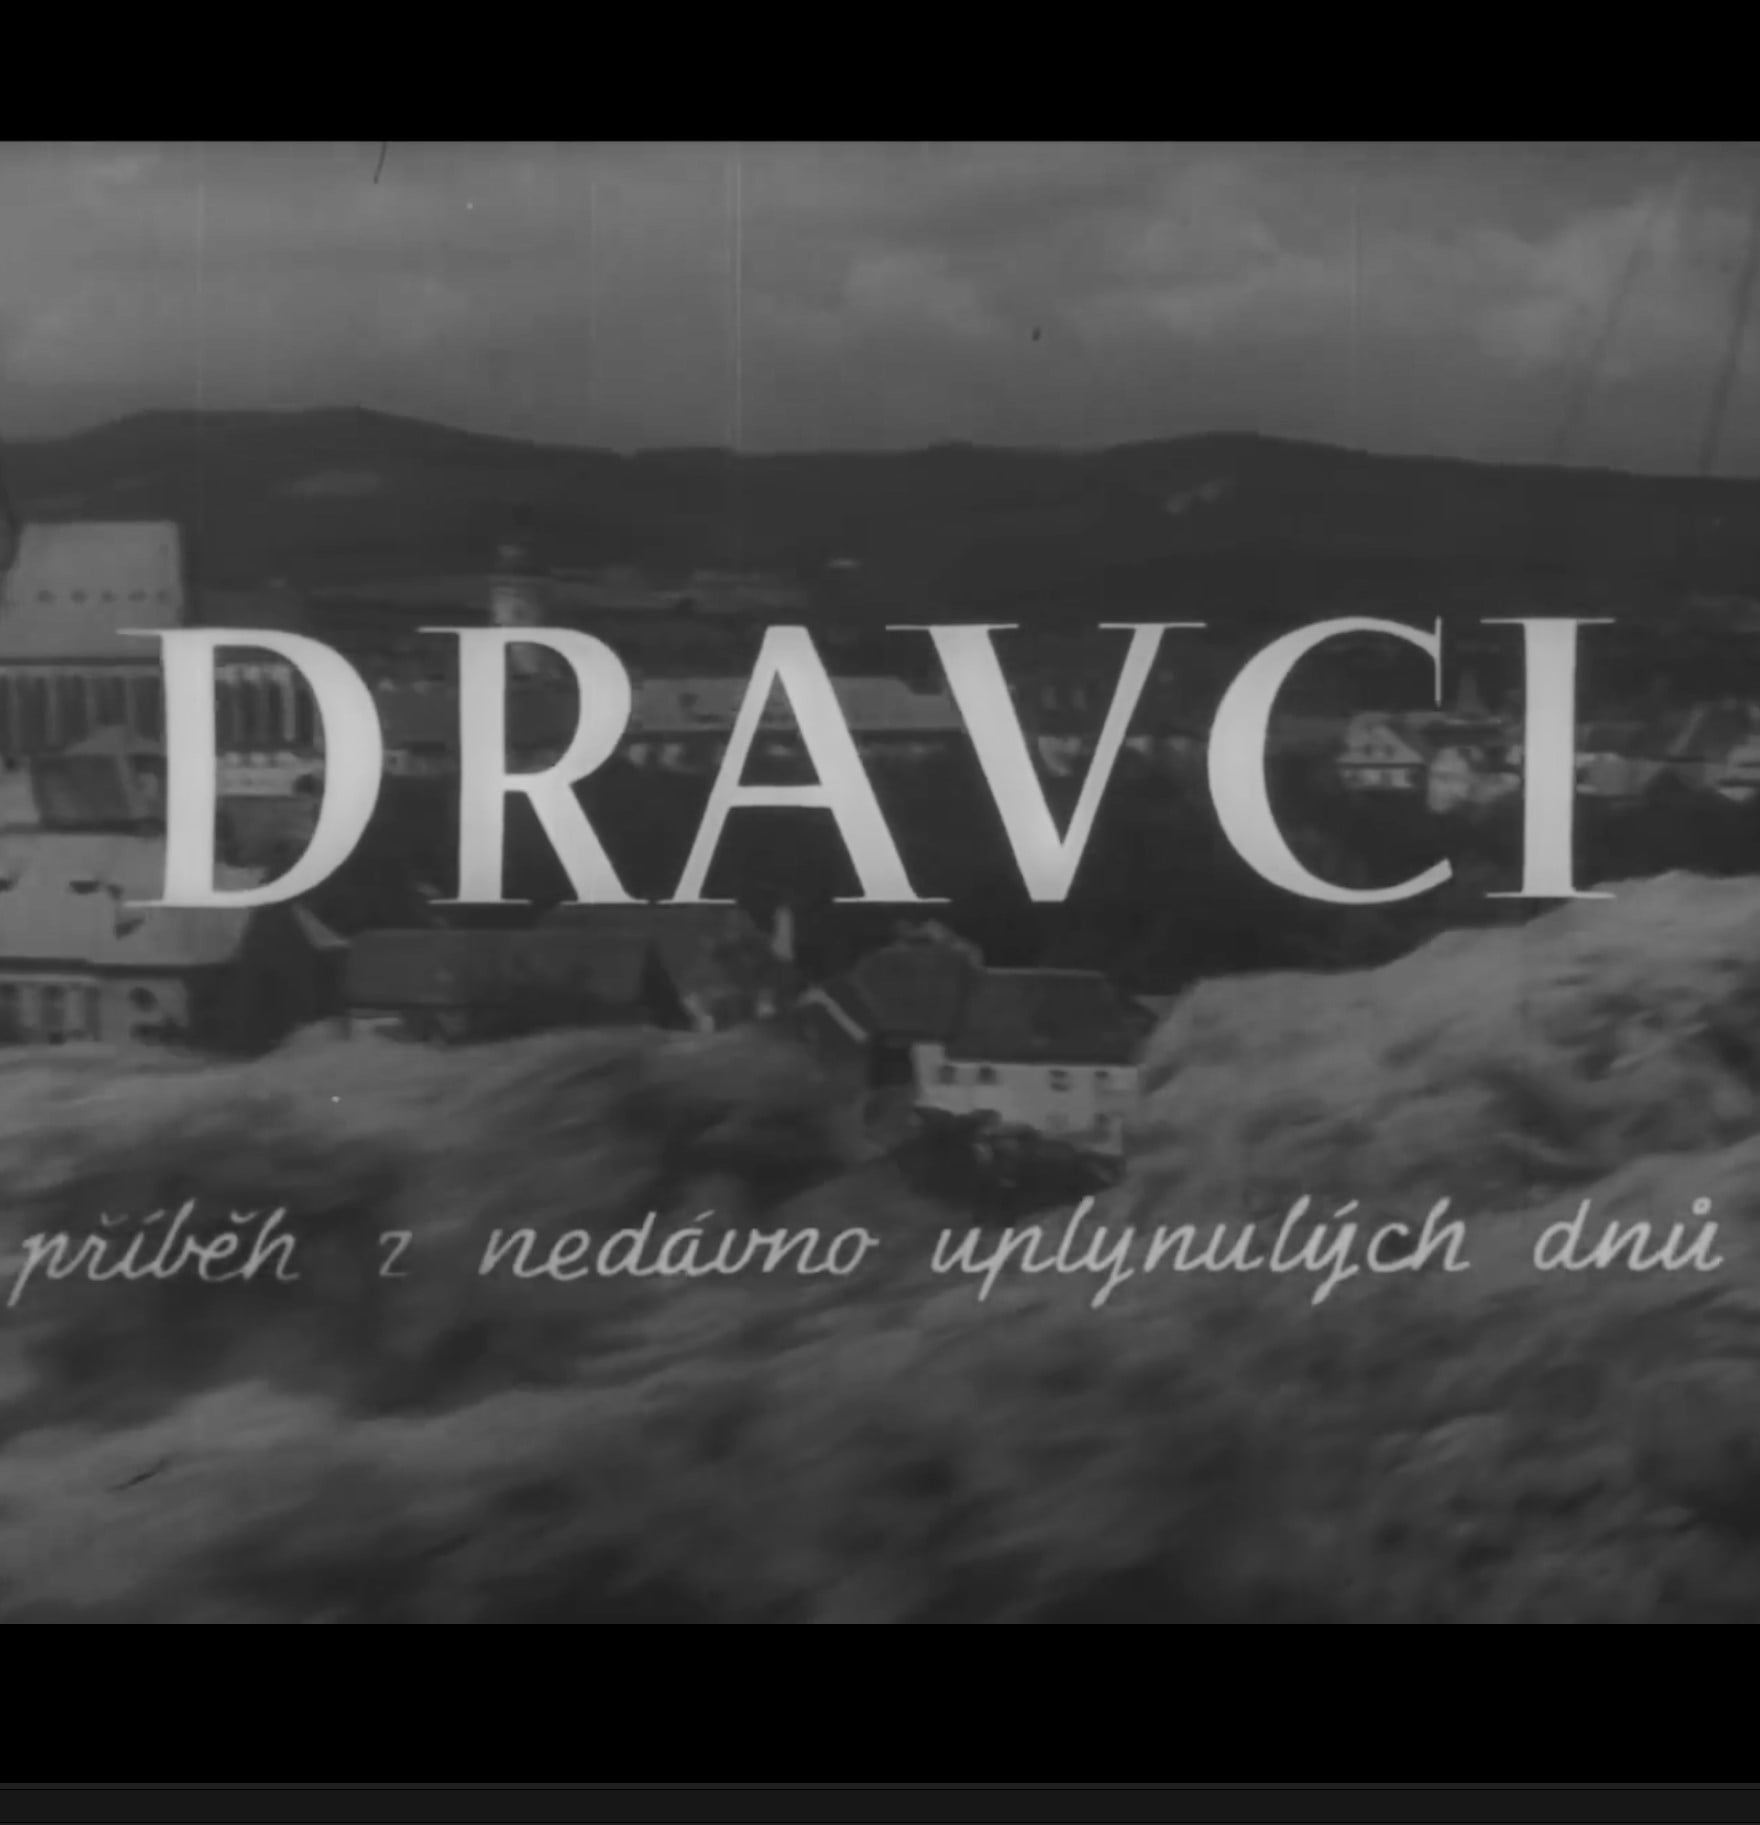 Plakát pro film “Dravci”